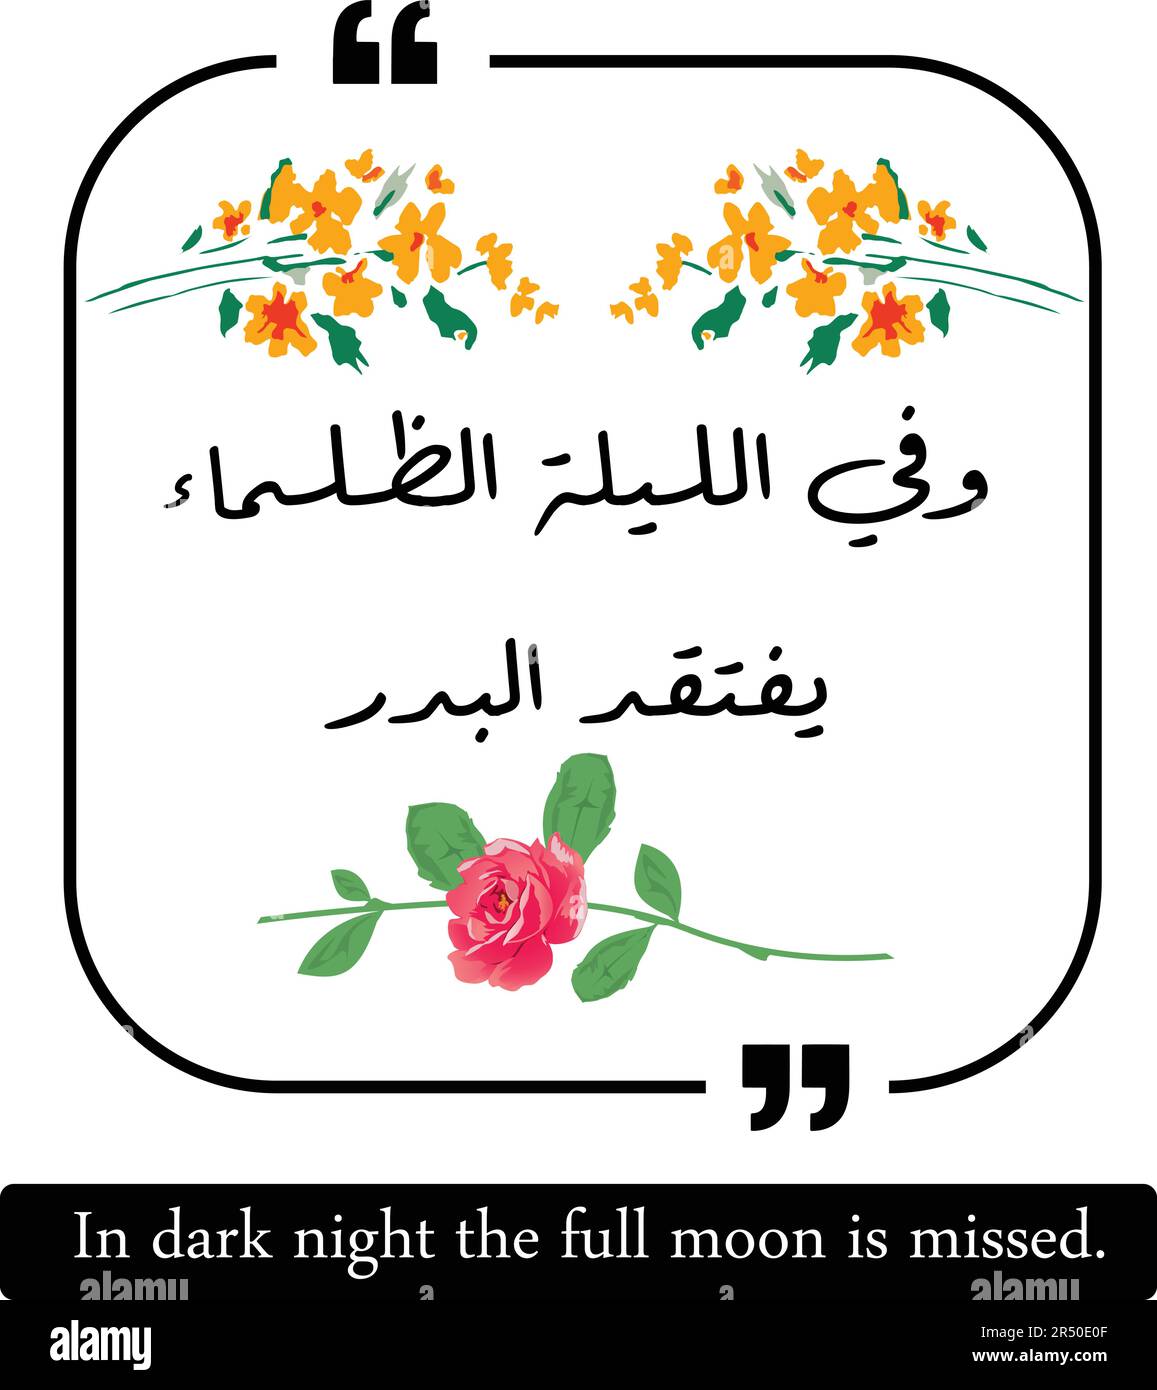 Arabisches Zitat bedeutet, dass in dunkler Nacht der Vollmond verpasst wird. Arabische Anführungszeichen mit englischer Übersetzung. Stock Vektor